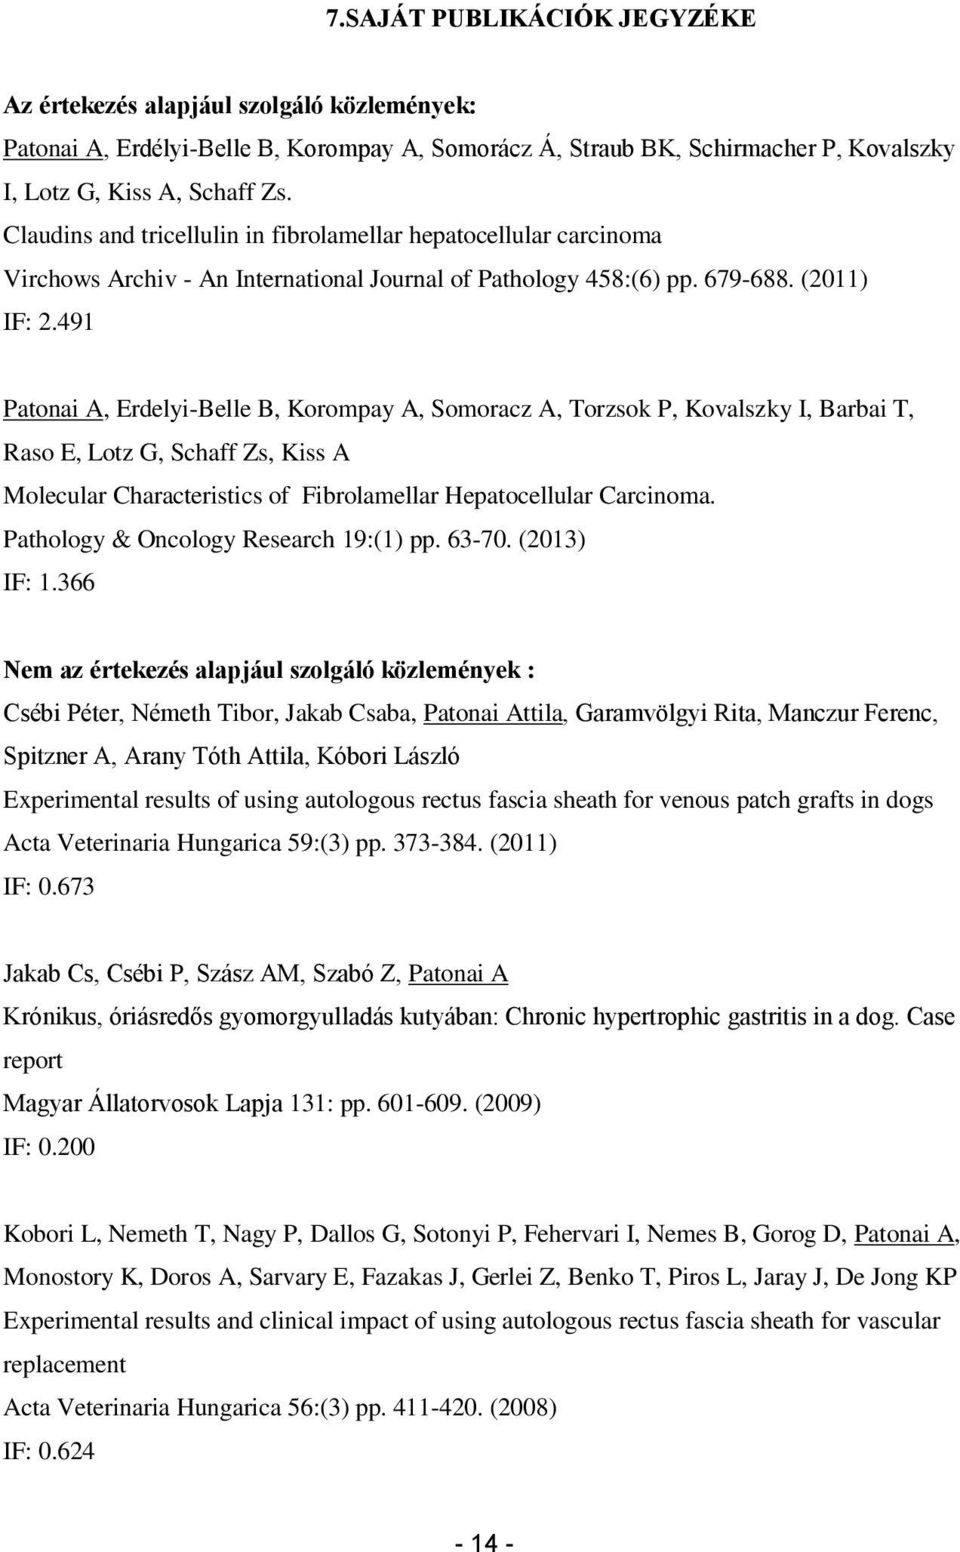 491 Patonai A, Erdelyi-Belle B, Korompay A, Somoracz A, Torzsok P, Kovalszky I, Barbai T, Raso E, Lotz G, Schaff Zs, Kiss A Molecular Characteristics of Fibrolamellar Hepatocellular Carcinoma.